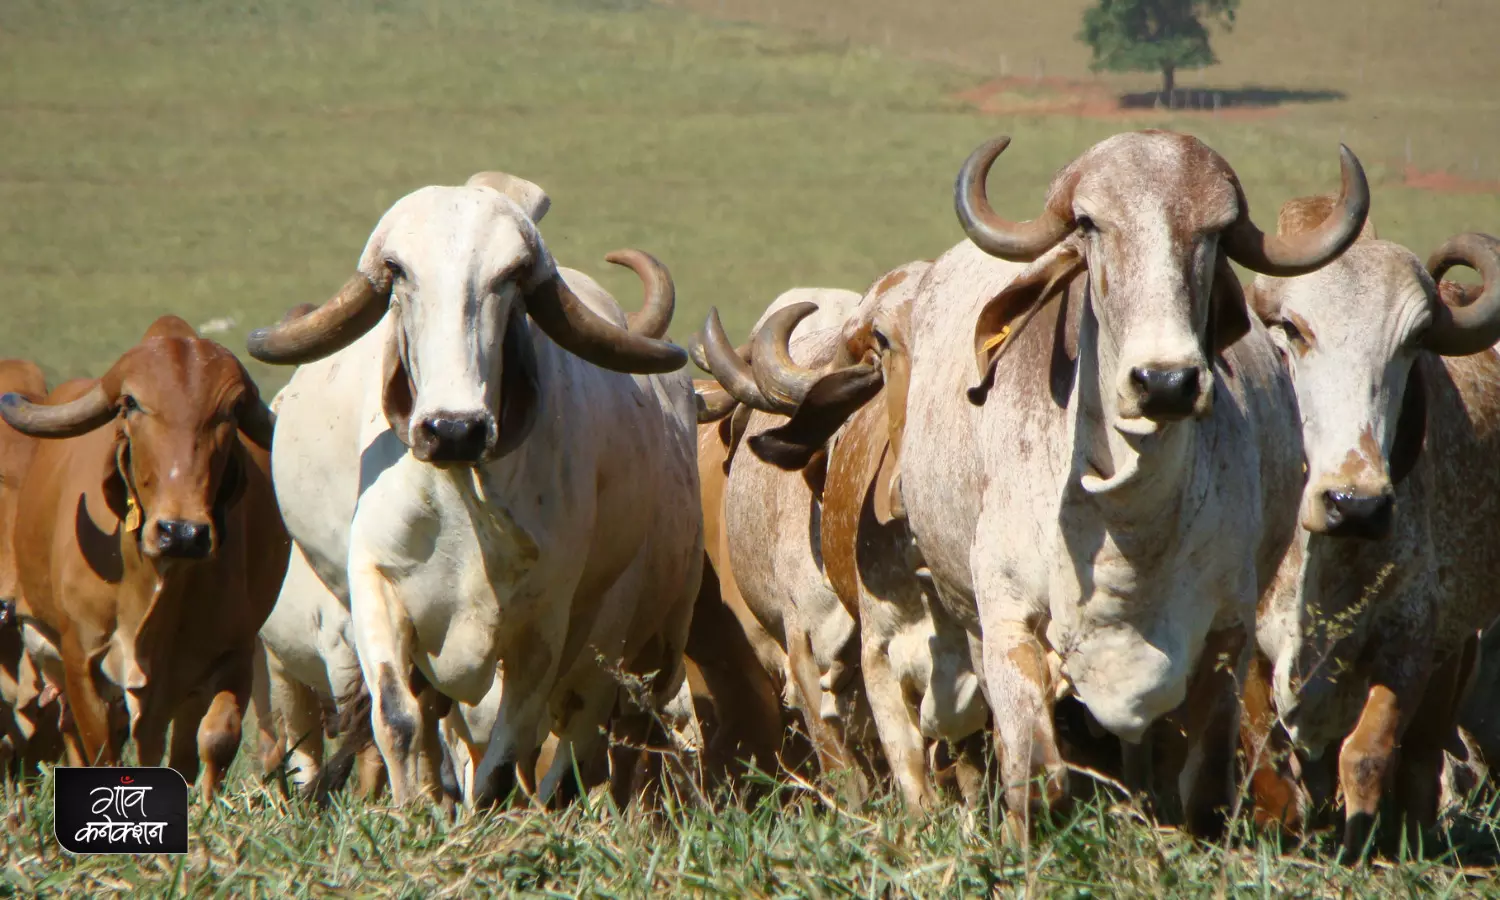 गाय-भैंस की देसी नस्लों के संरक्षण के लिए इस बार इन्हें मिल रहा राष्ट्रीय गोपाल रत्न पुरस्कार